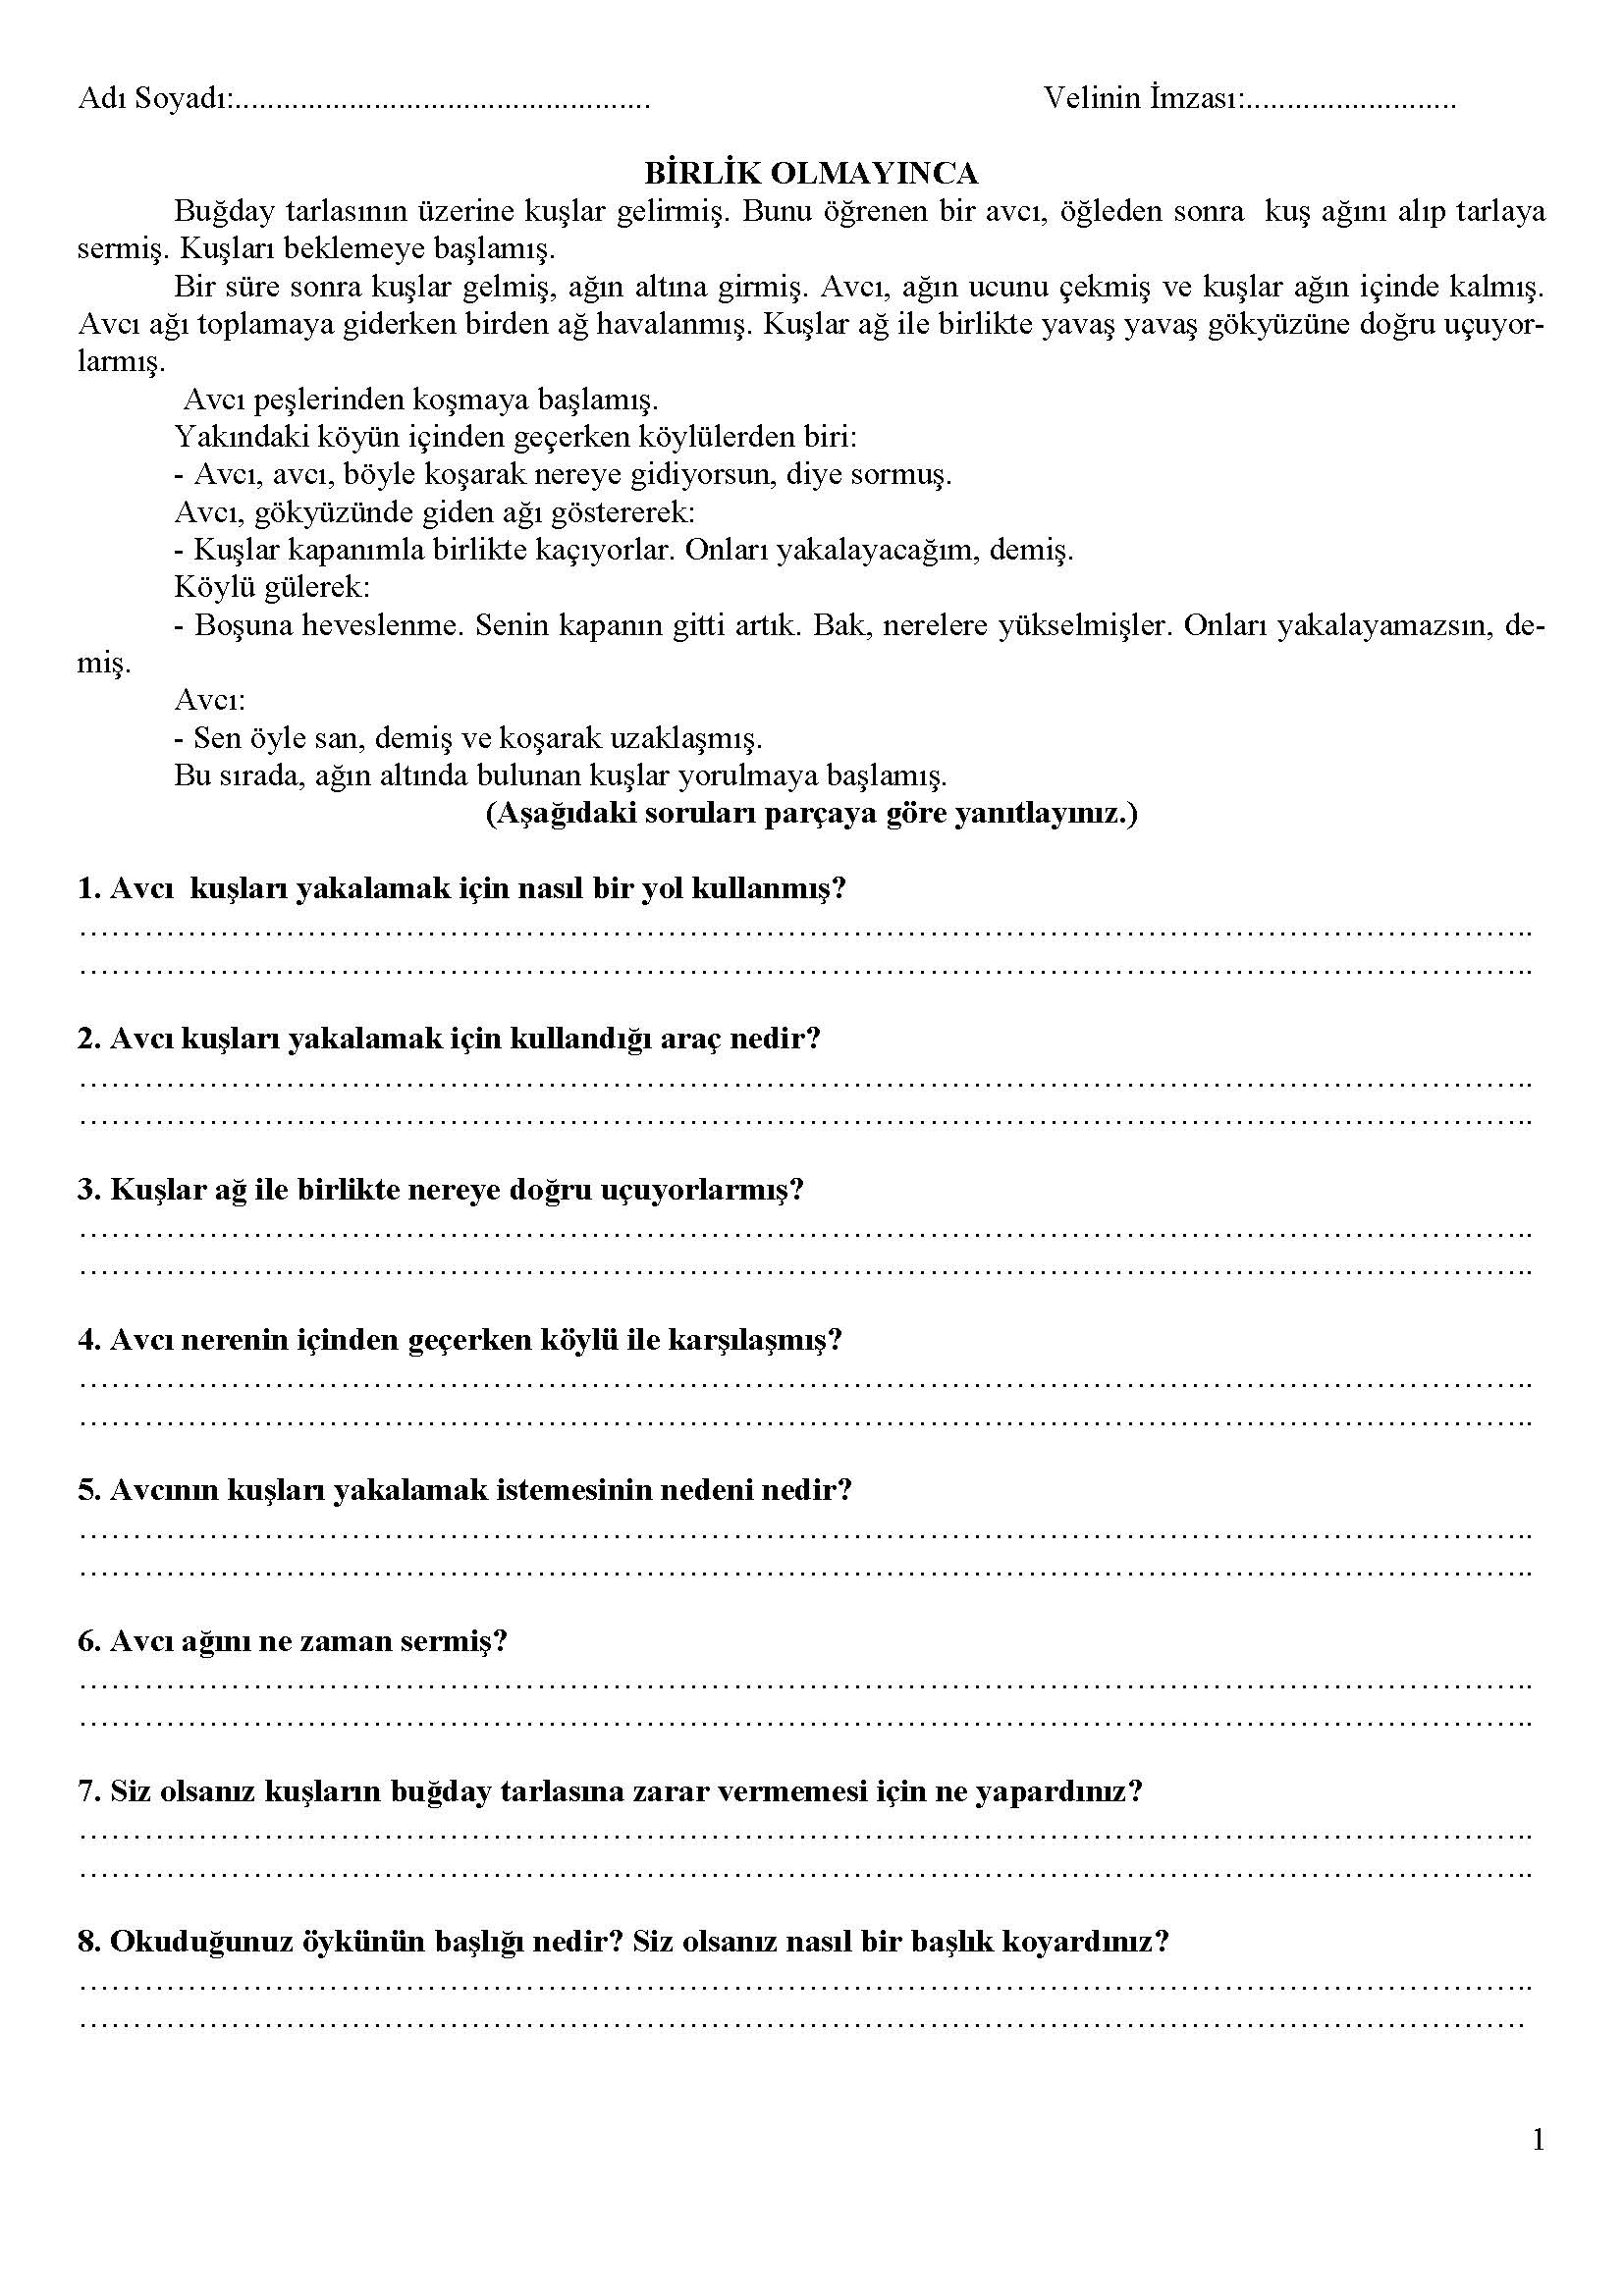 2. Sınıf Türkçe Okuma Anlama Etkinliği - BİRLİK OLMAYINCA